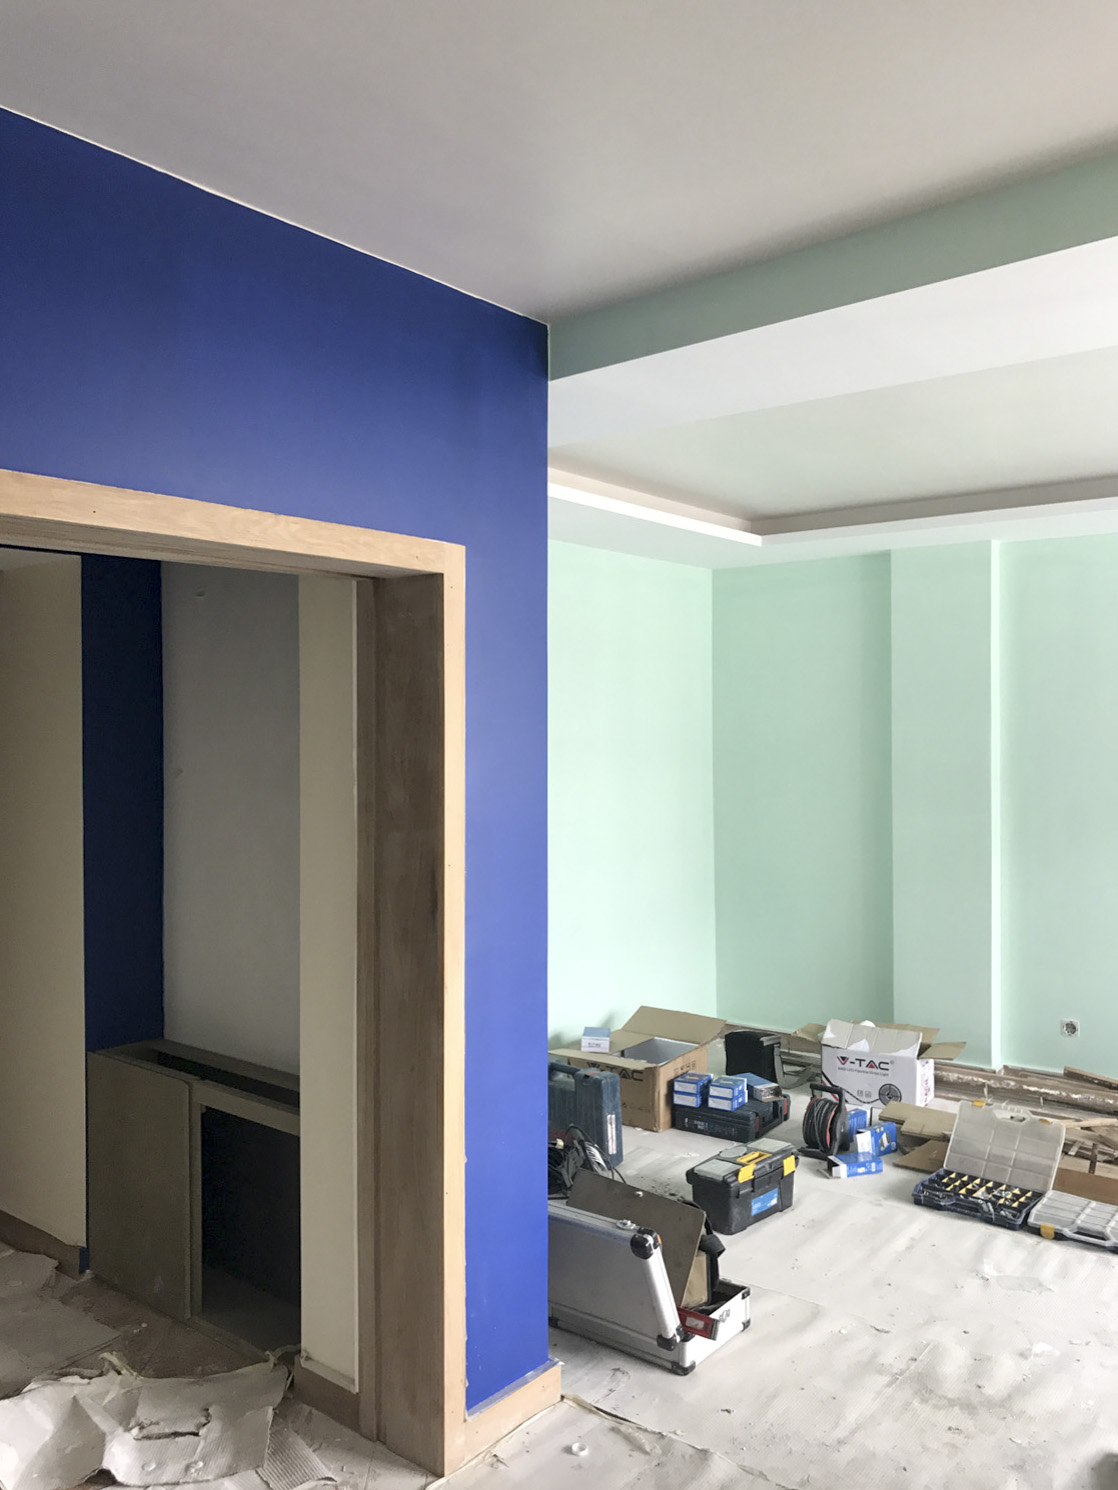 Apartamento Azul Farol - Porto - EVA evolutionary architecture - EVA atelier - Arquitecto - Remodelação (14).jpg